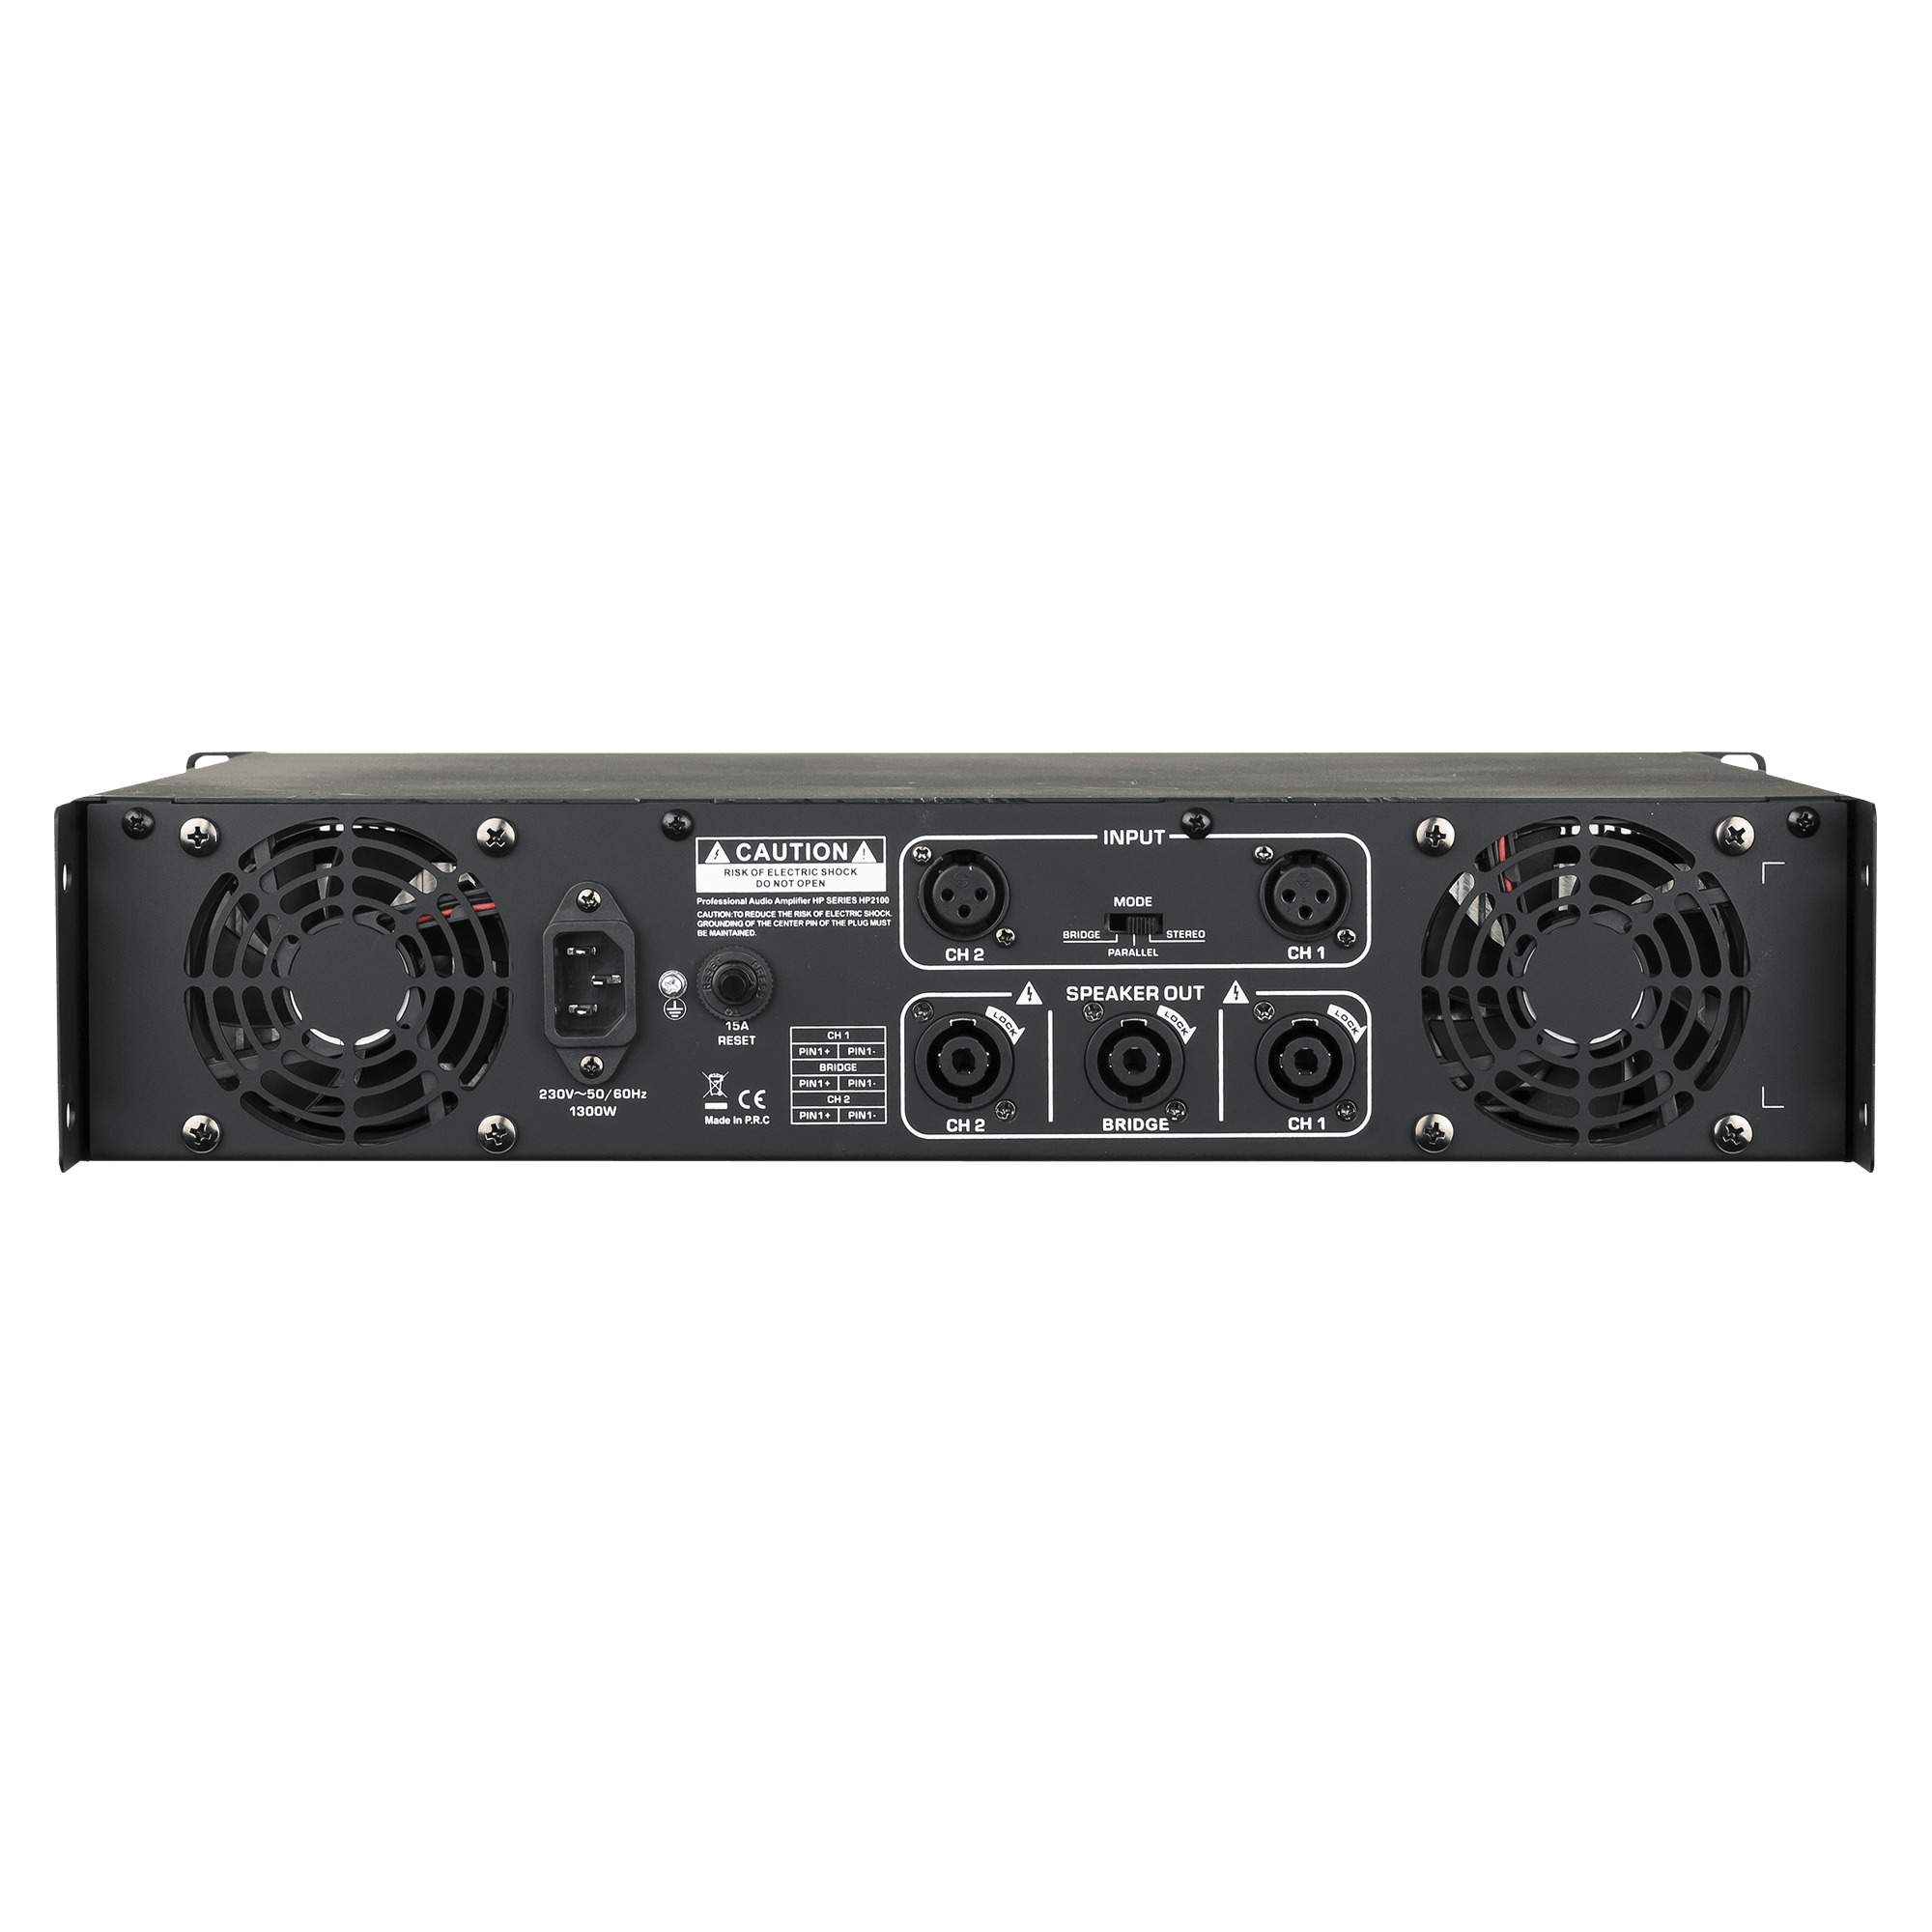 DAP HP-2100 2x 1000 W Amplifier - DY Pro Audio